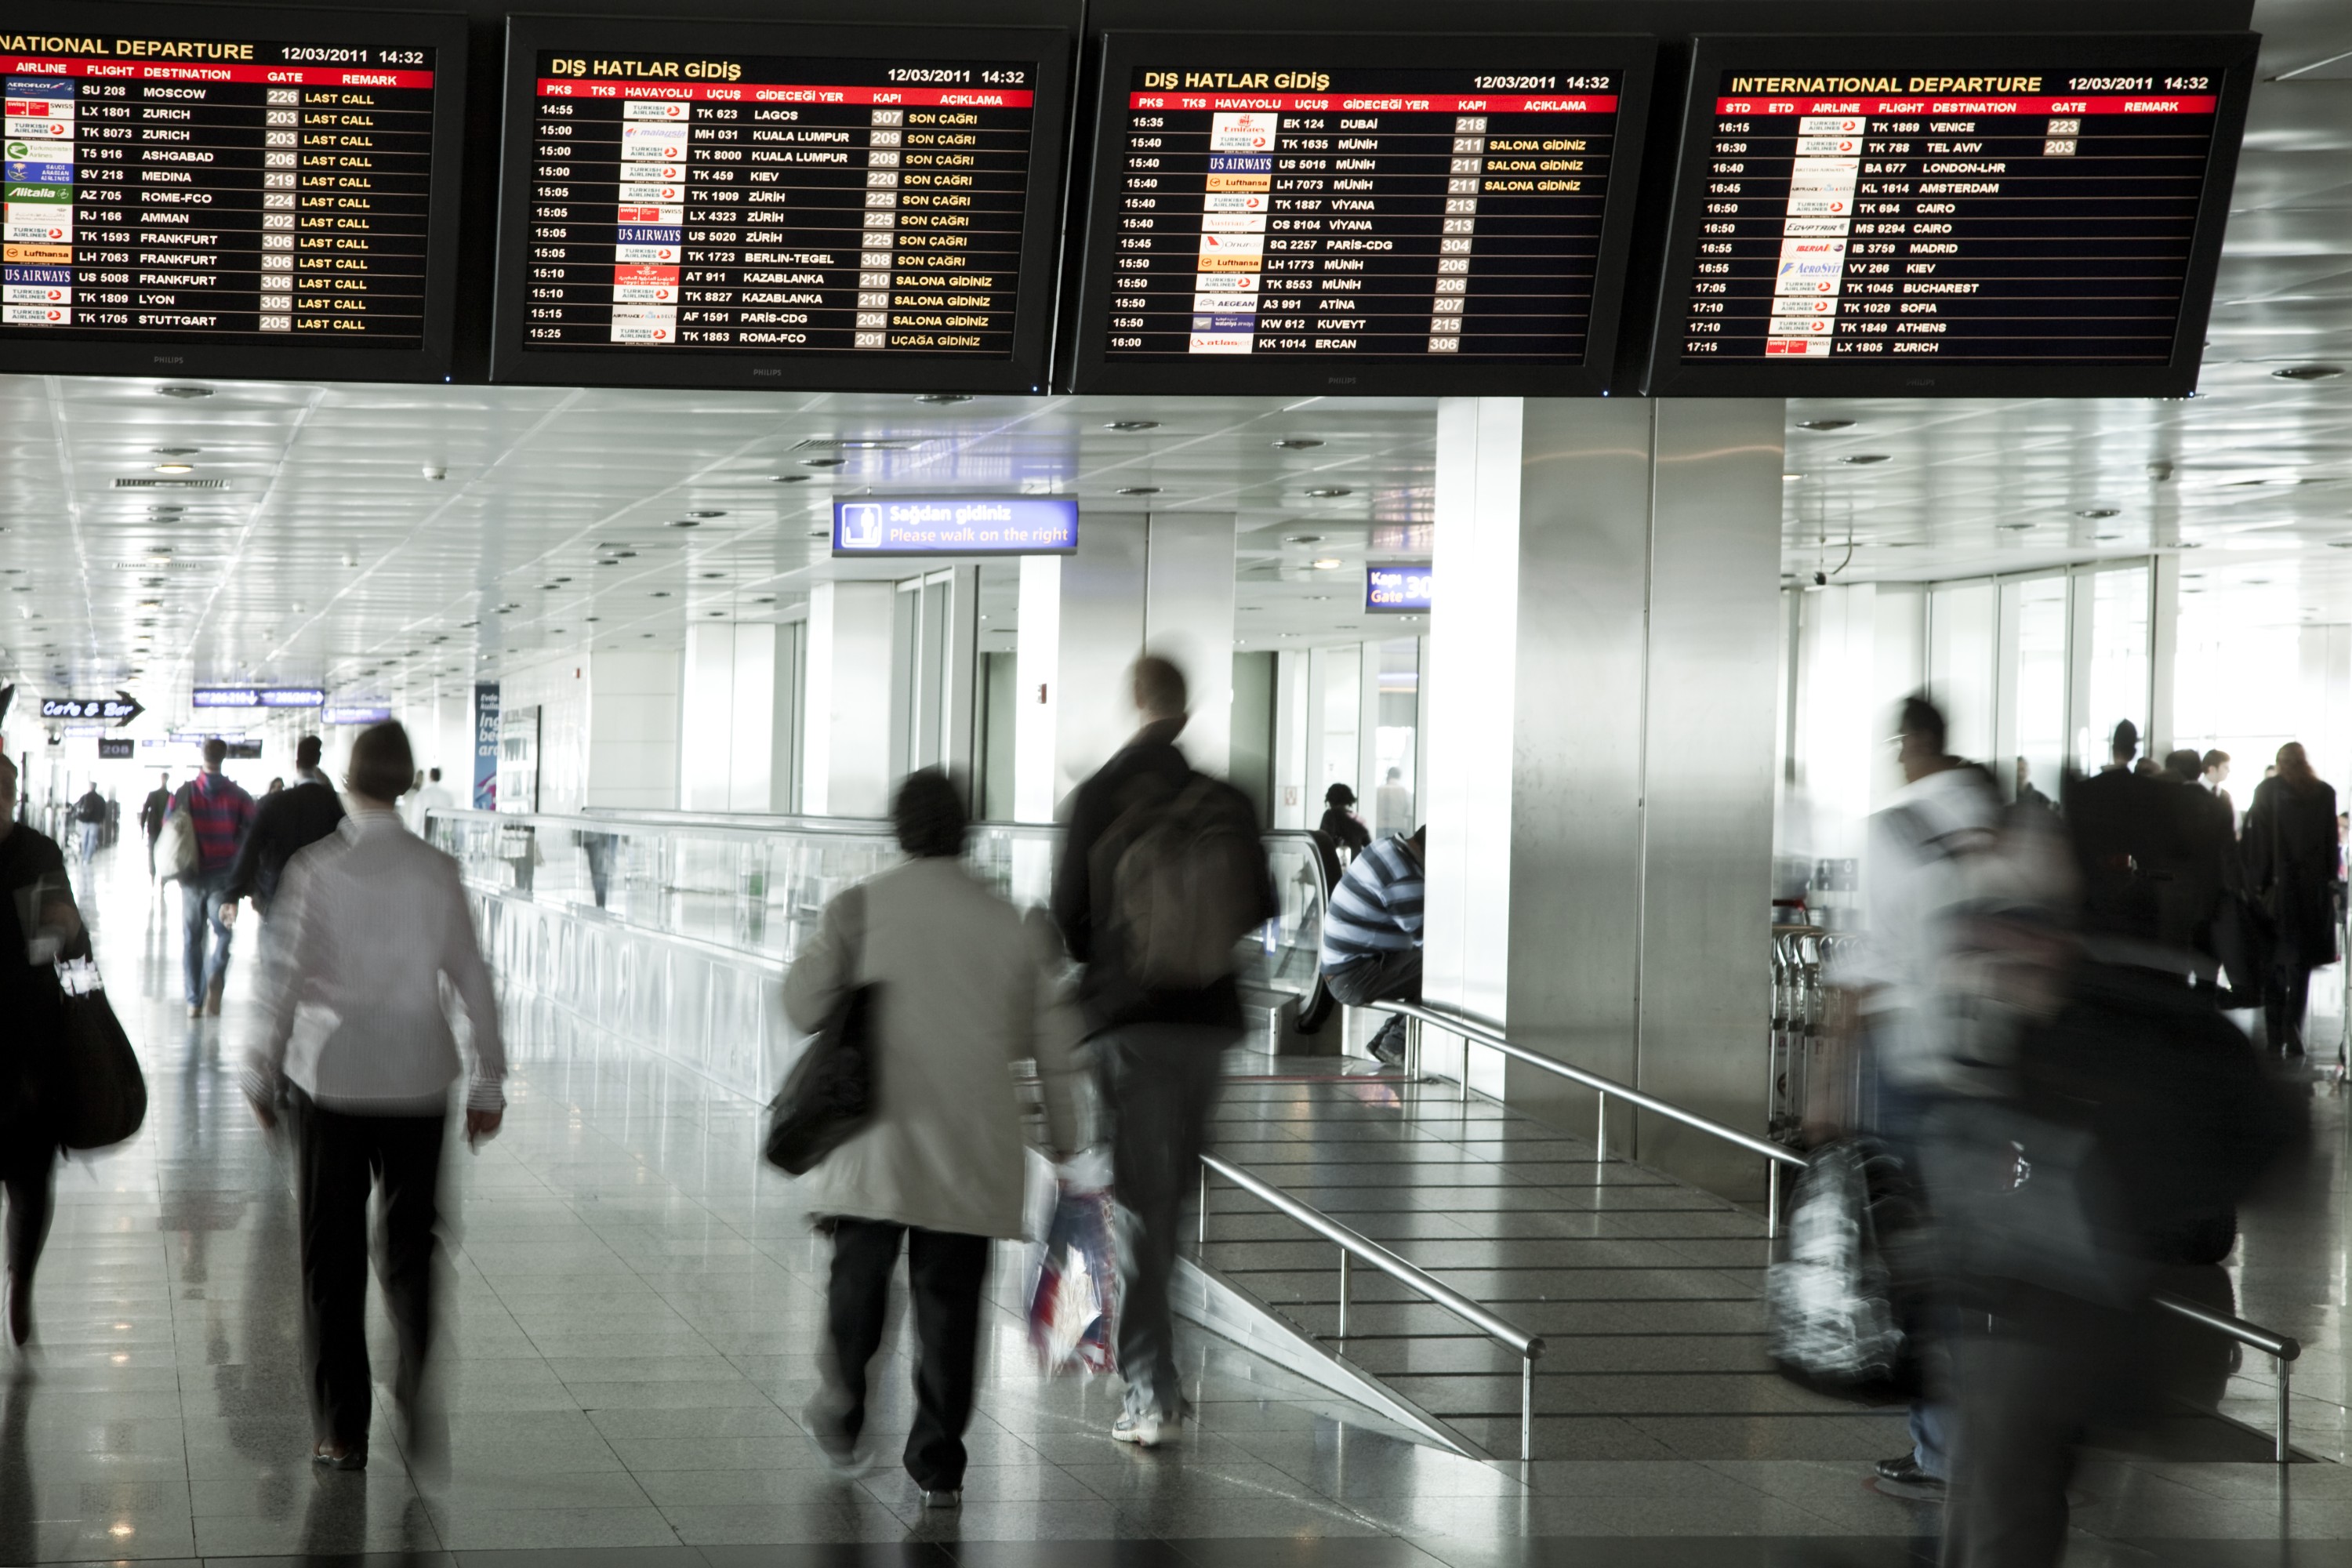 Snr d edilmek istemeyen ahs, Atatrk Havalimannda bileklerini kesti